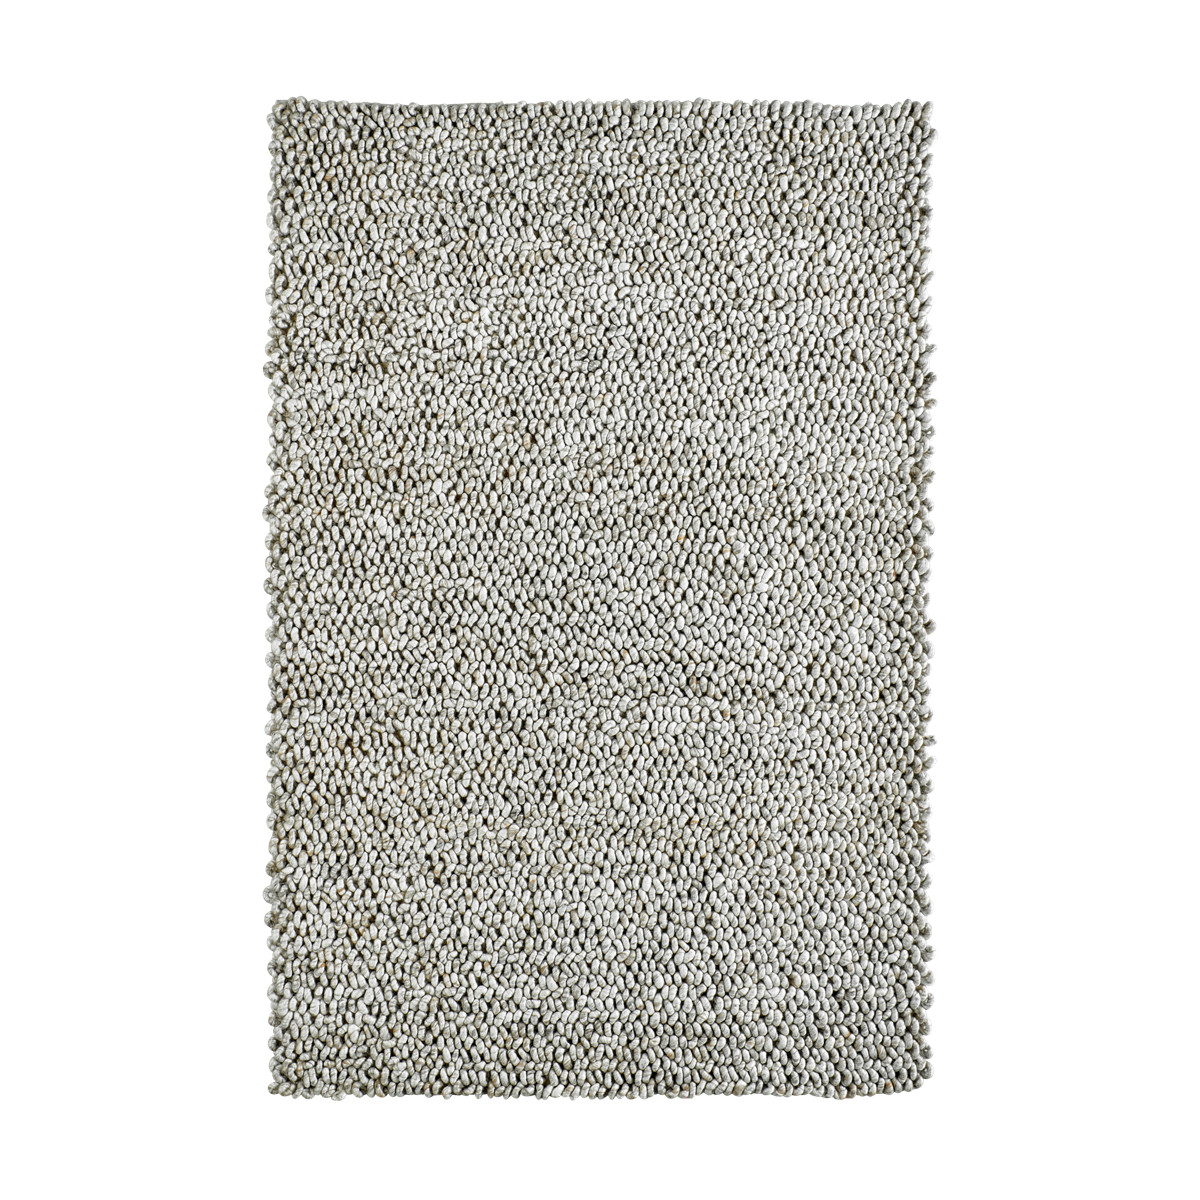 Ručně tkaný kusový koberec Lounge 440 SAND